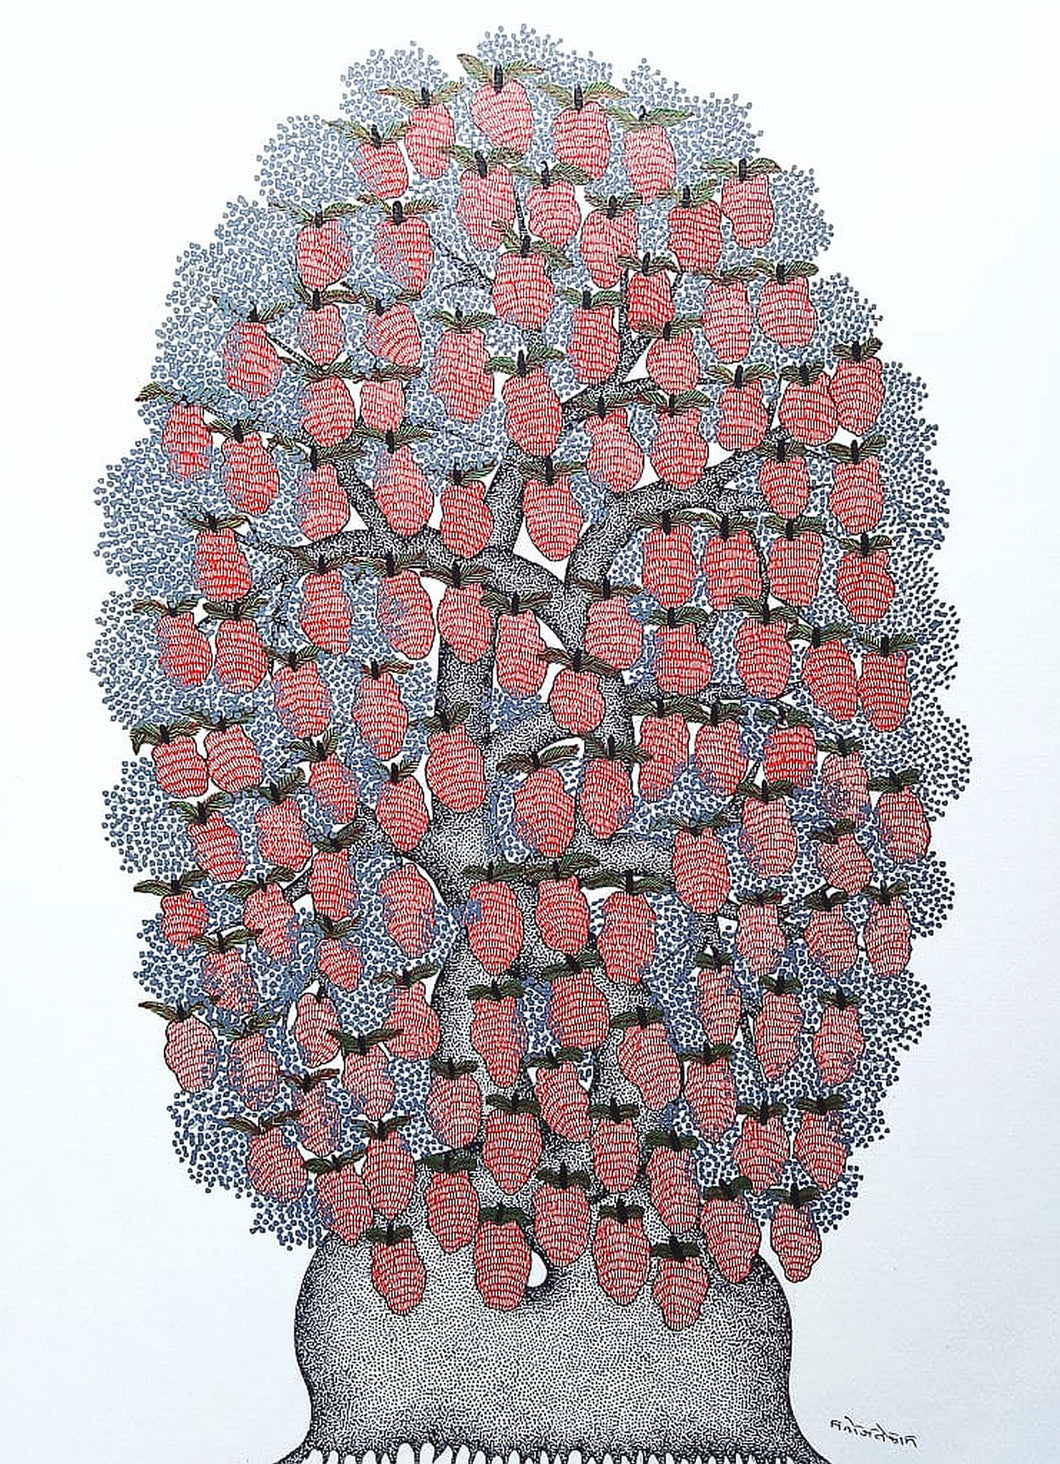 Tree Of Life - VIII by gond artist Manoj Tekam